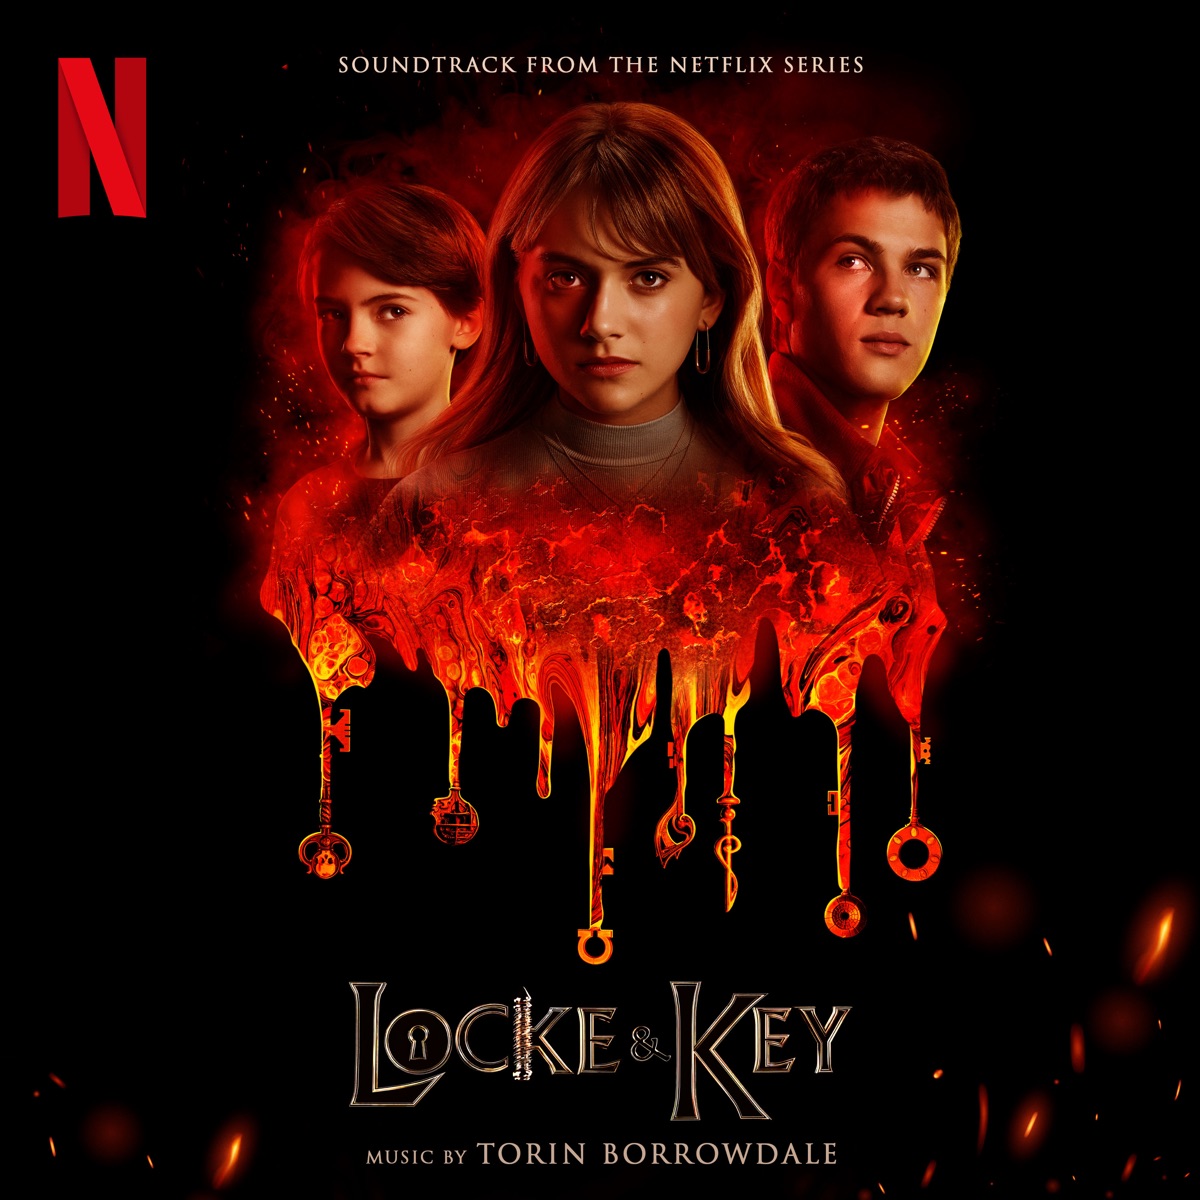 Trilha Sonora Completa de 'Locke & Key' 2ª Temporada da Netflix - Escute todas as músicas da série